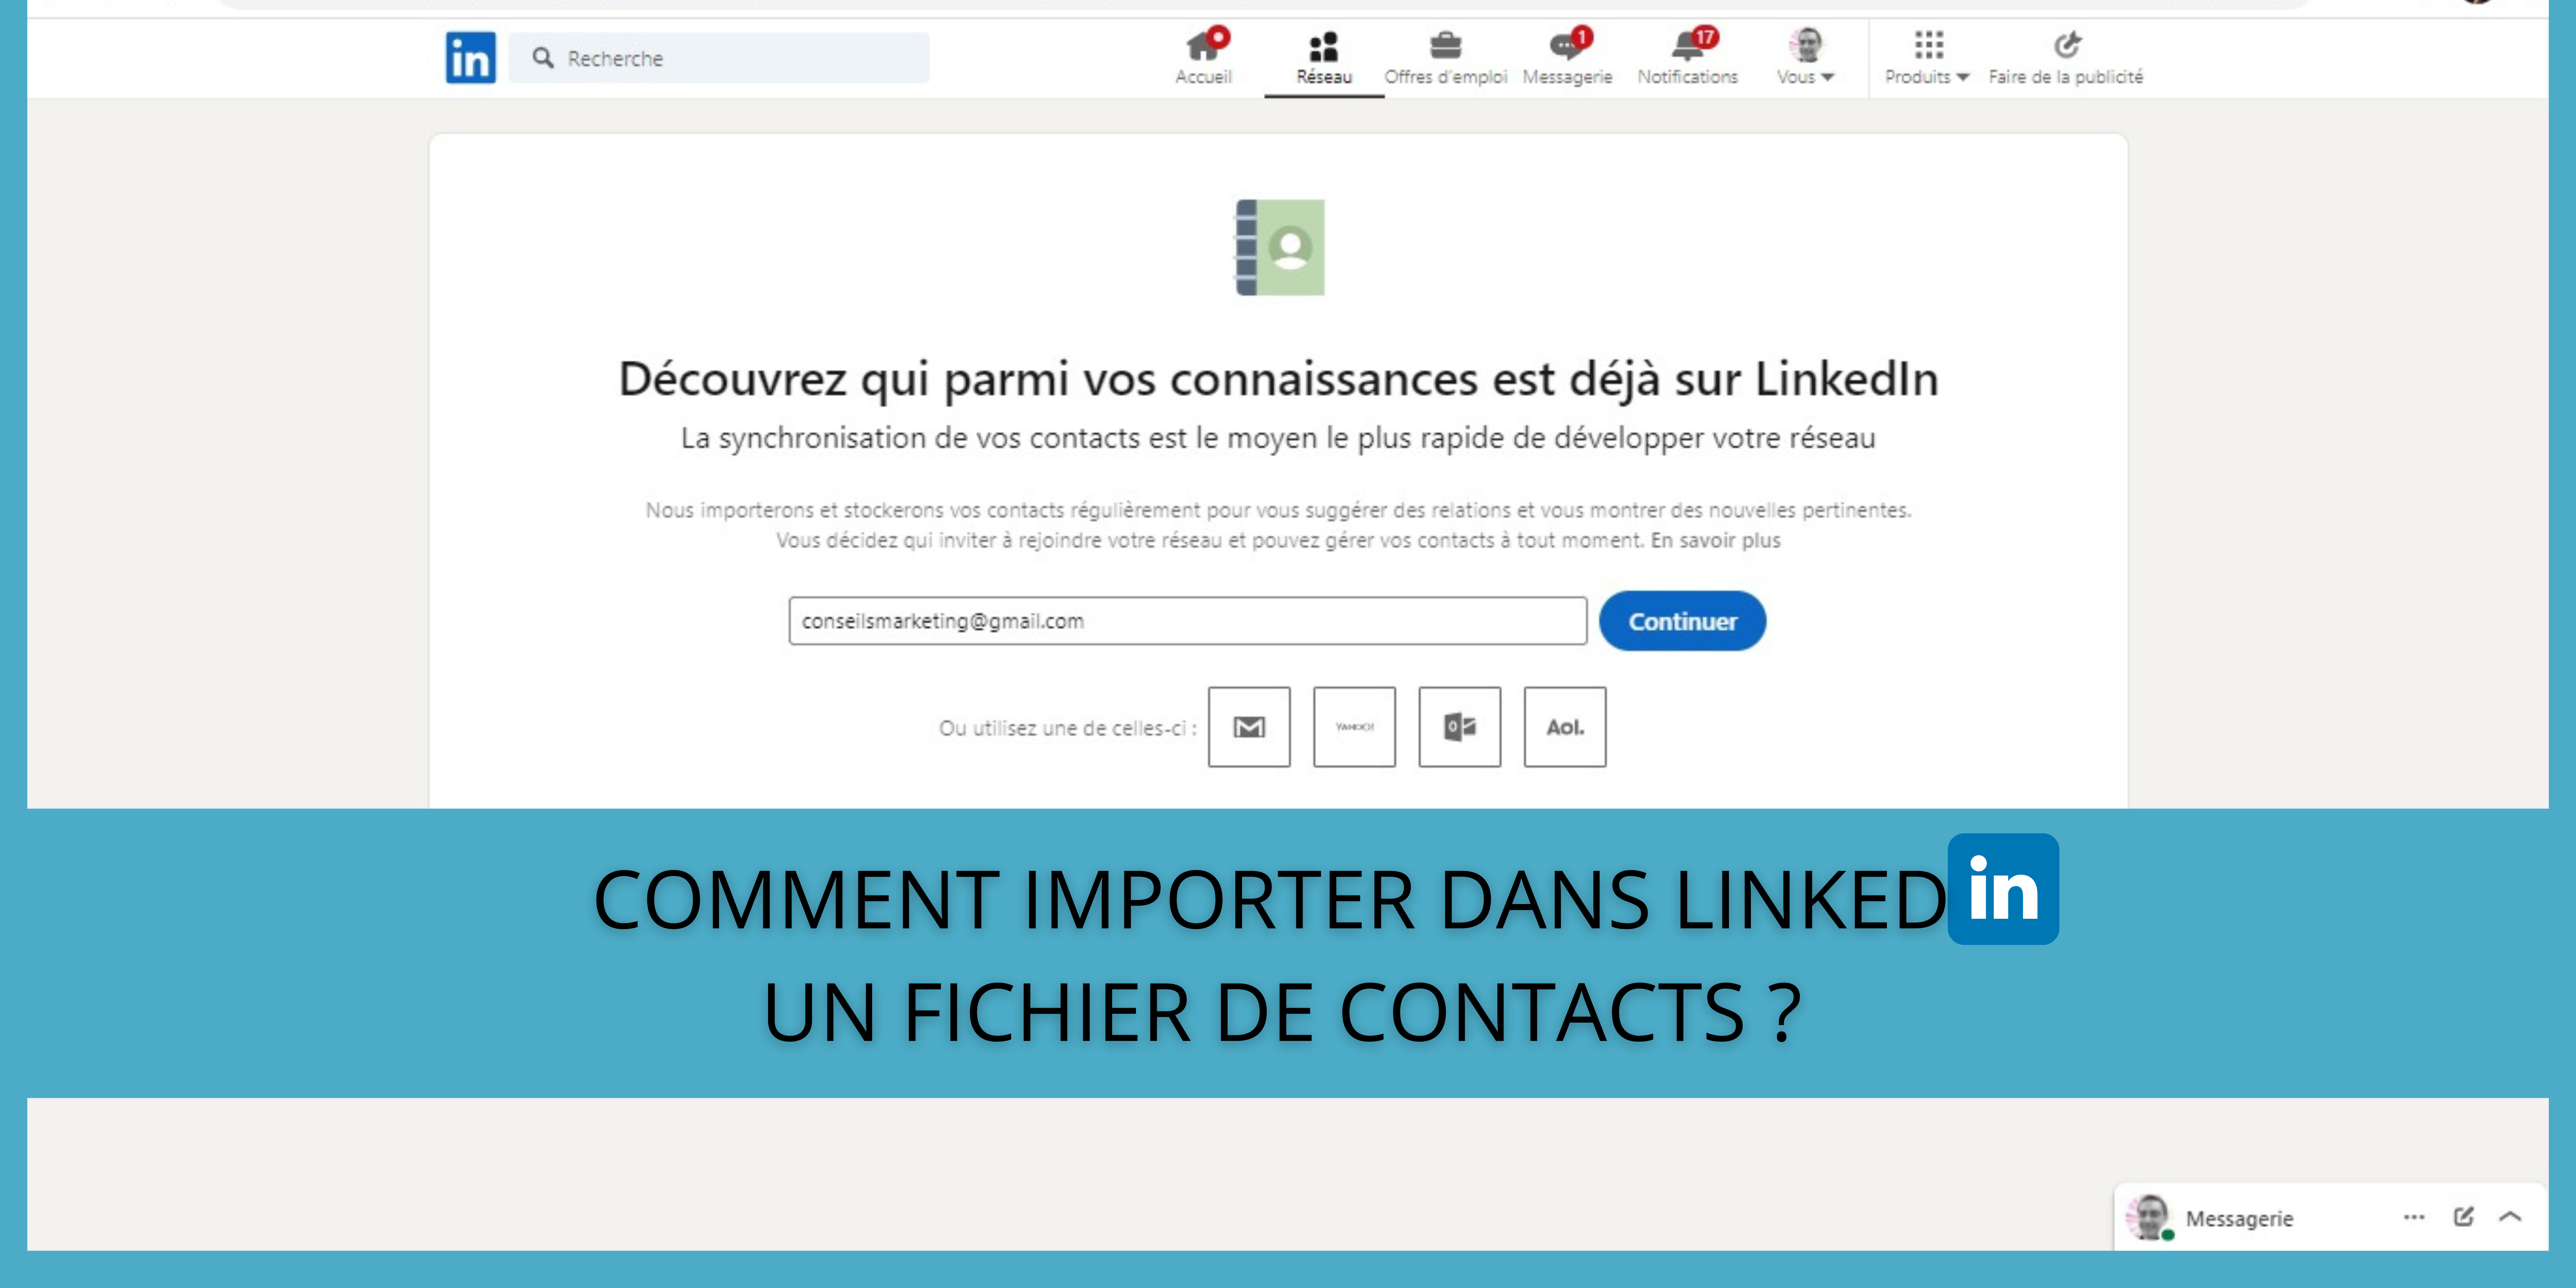 Comment importer dans LinkedIn un fichier de contacts ? 321